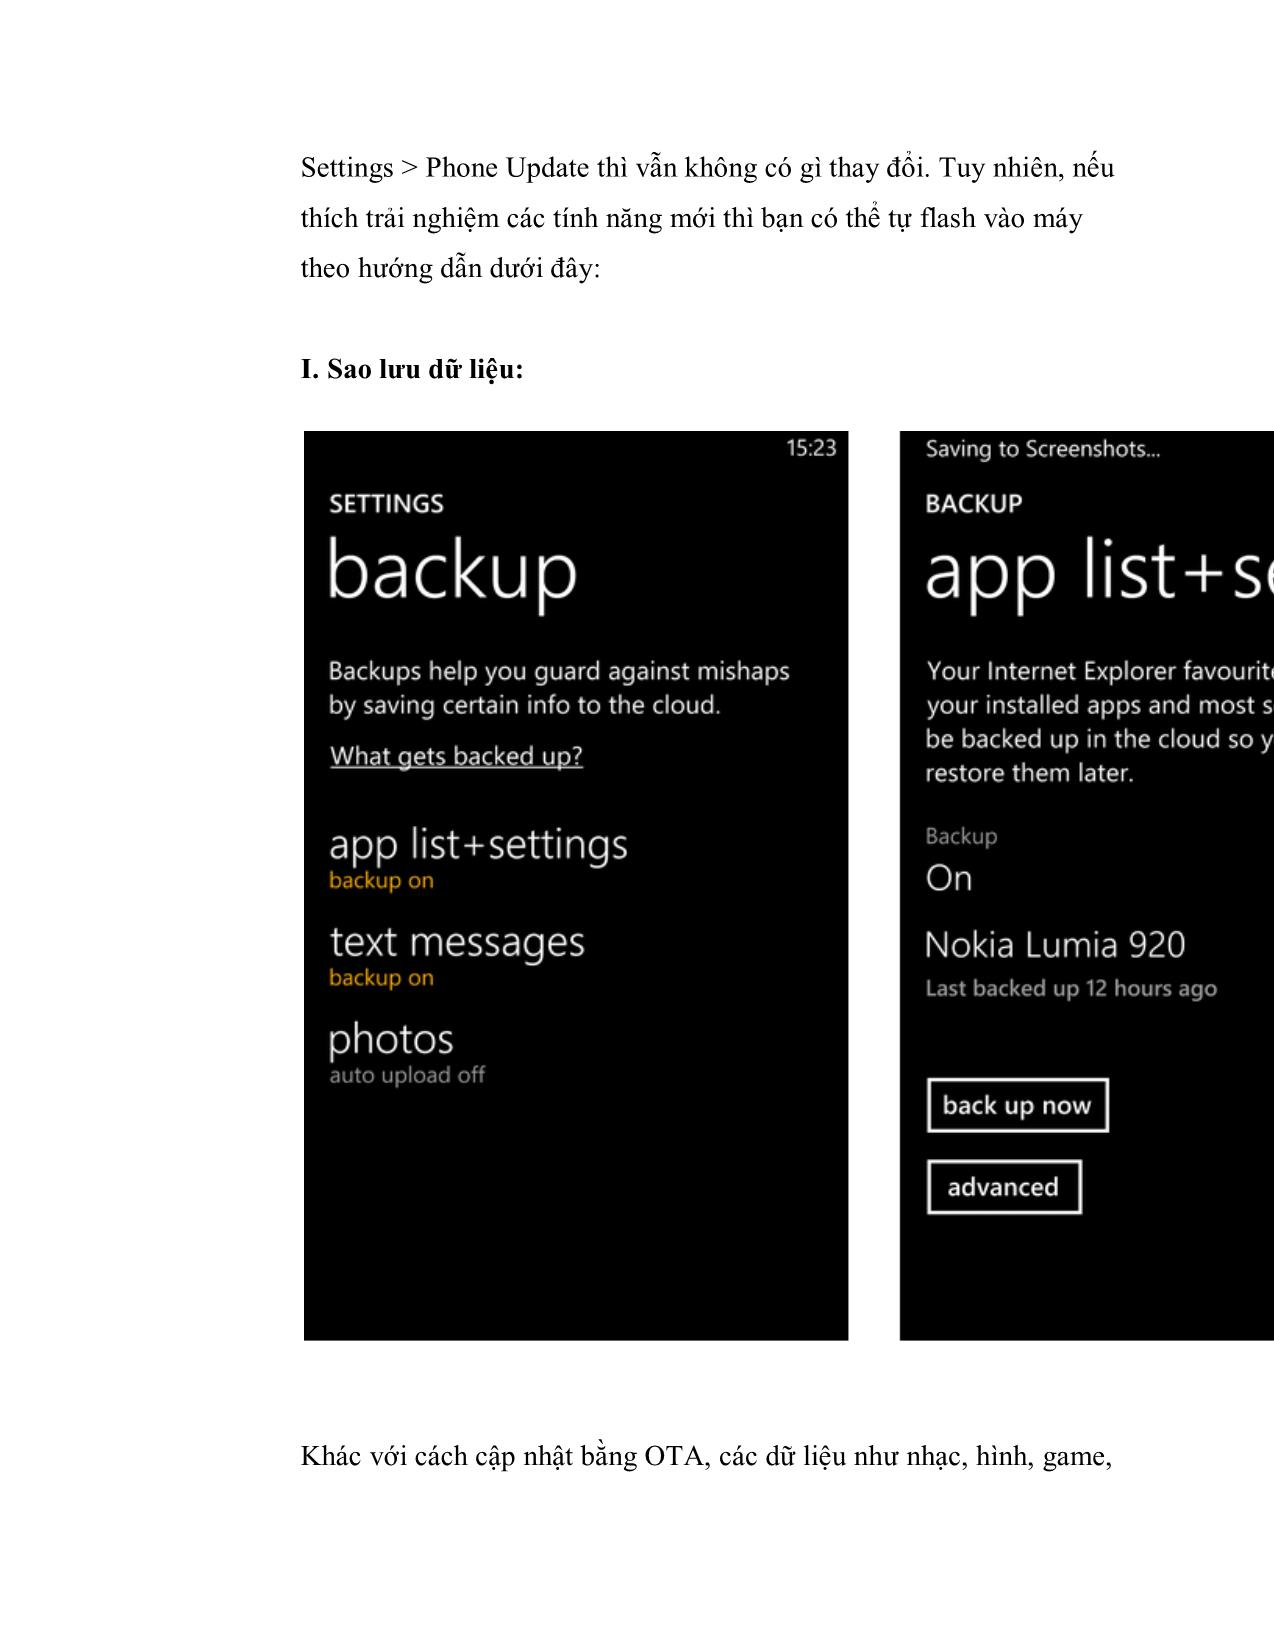 Hướng dẫn tải và cài đặt bản cập nhật Windows Phone 8 GDR2 cho Nokia Lumia 920/820/620 trang 2